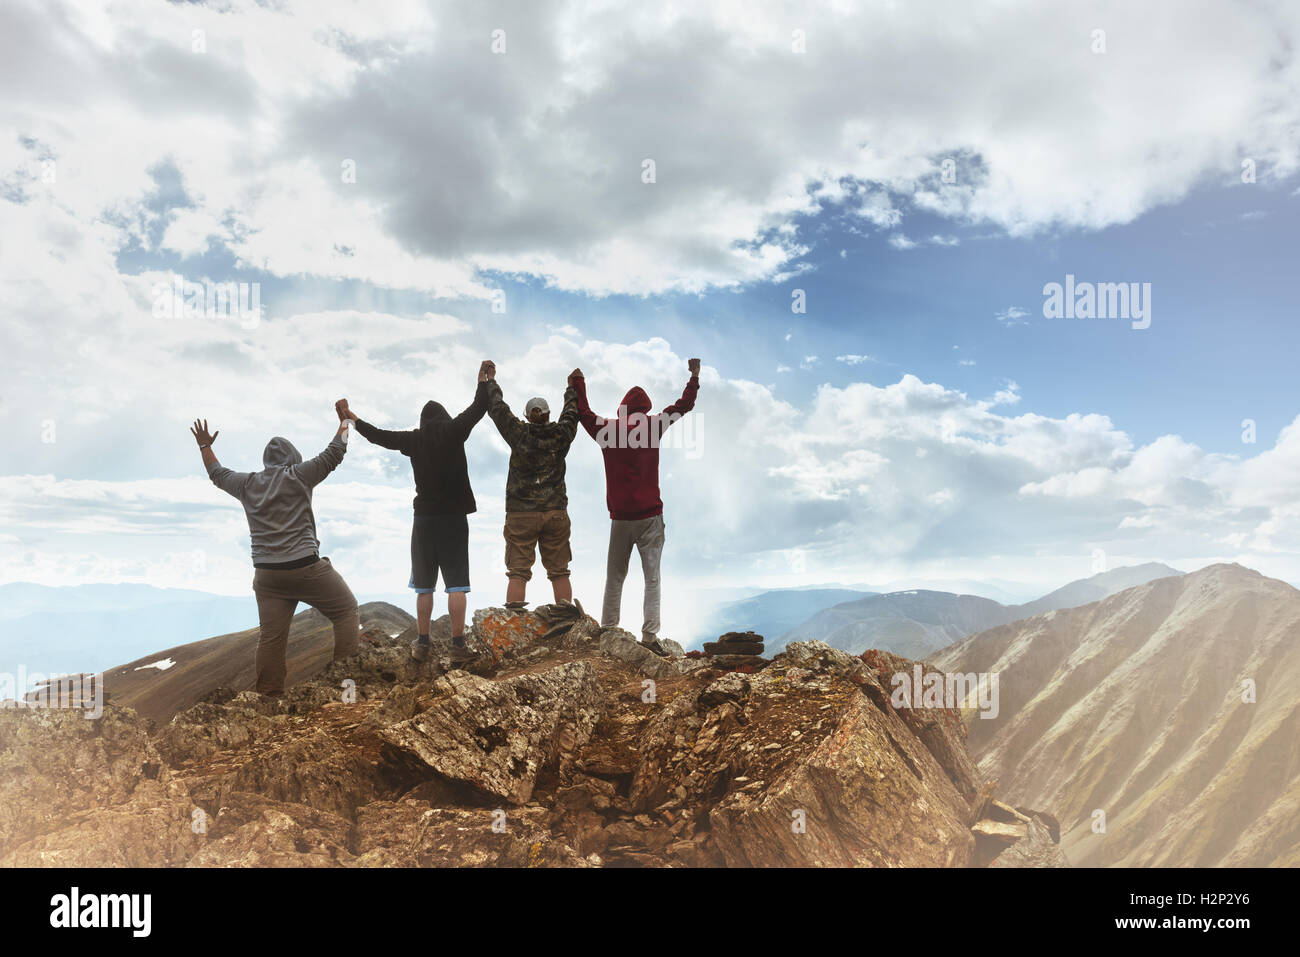 La gente del grupo ganador ganar concepto de montaña Foto de stock